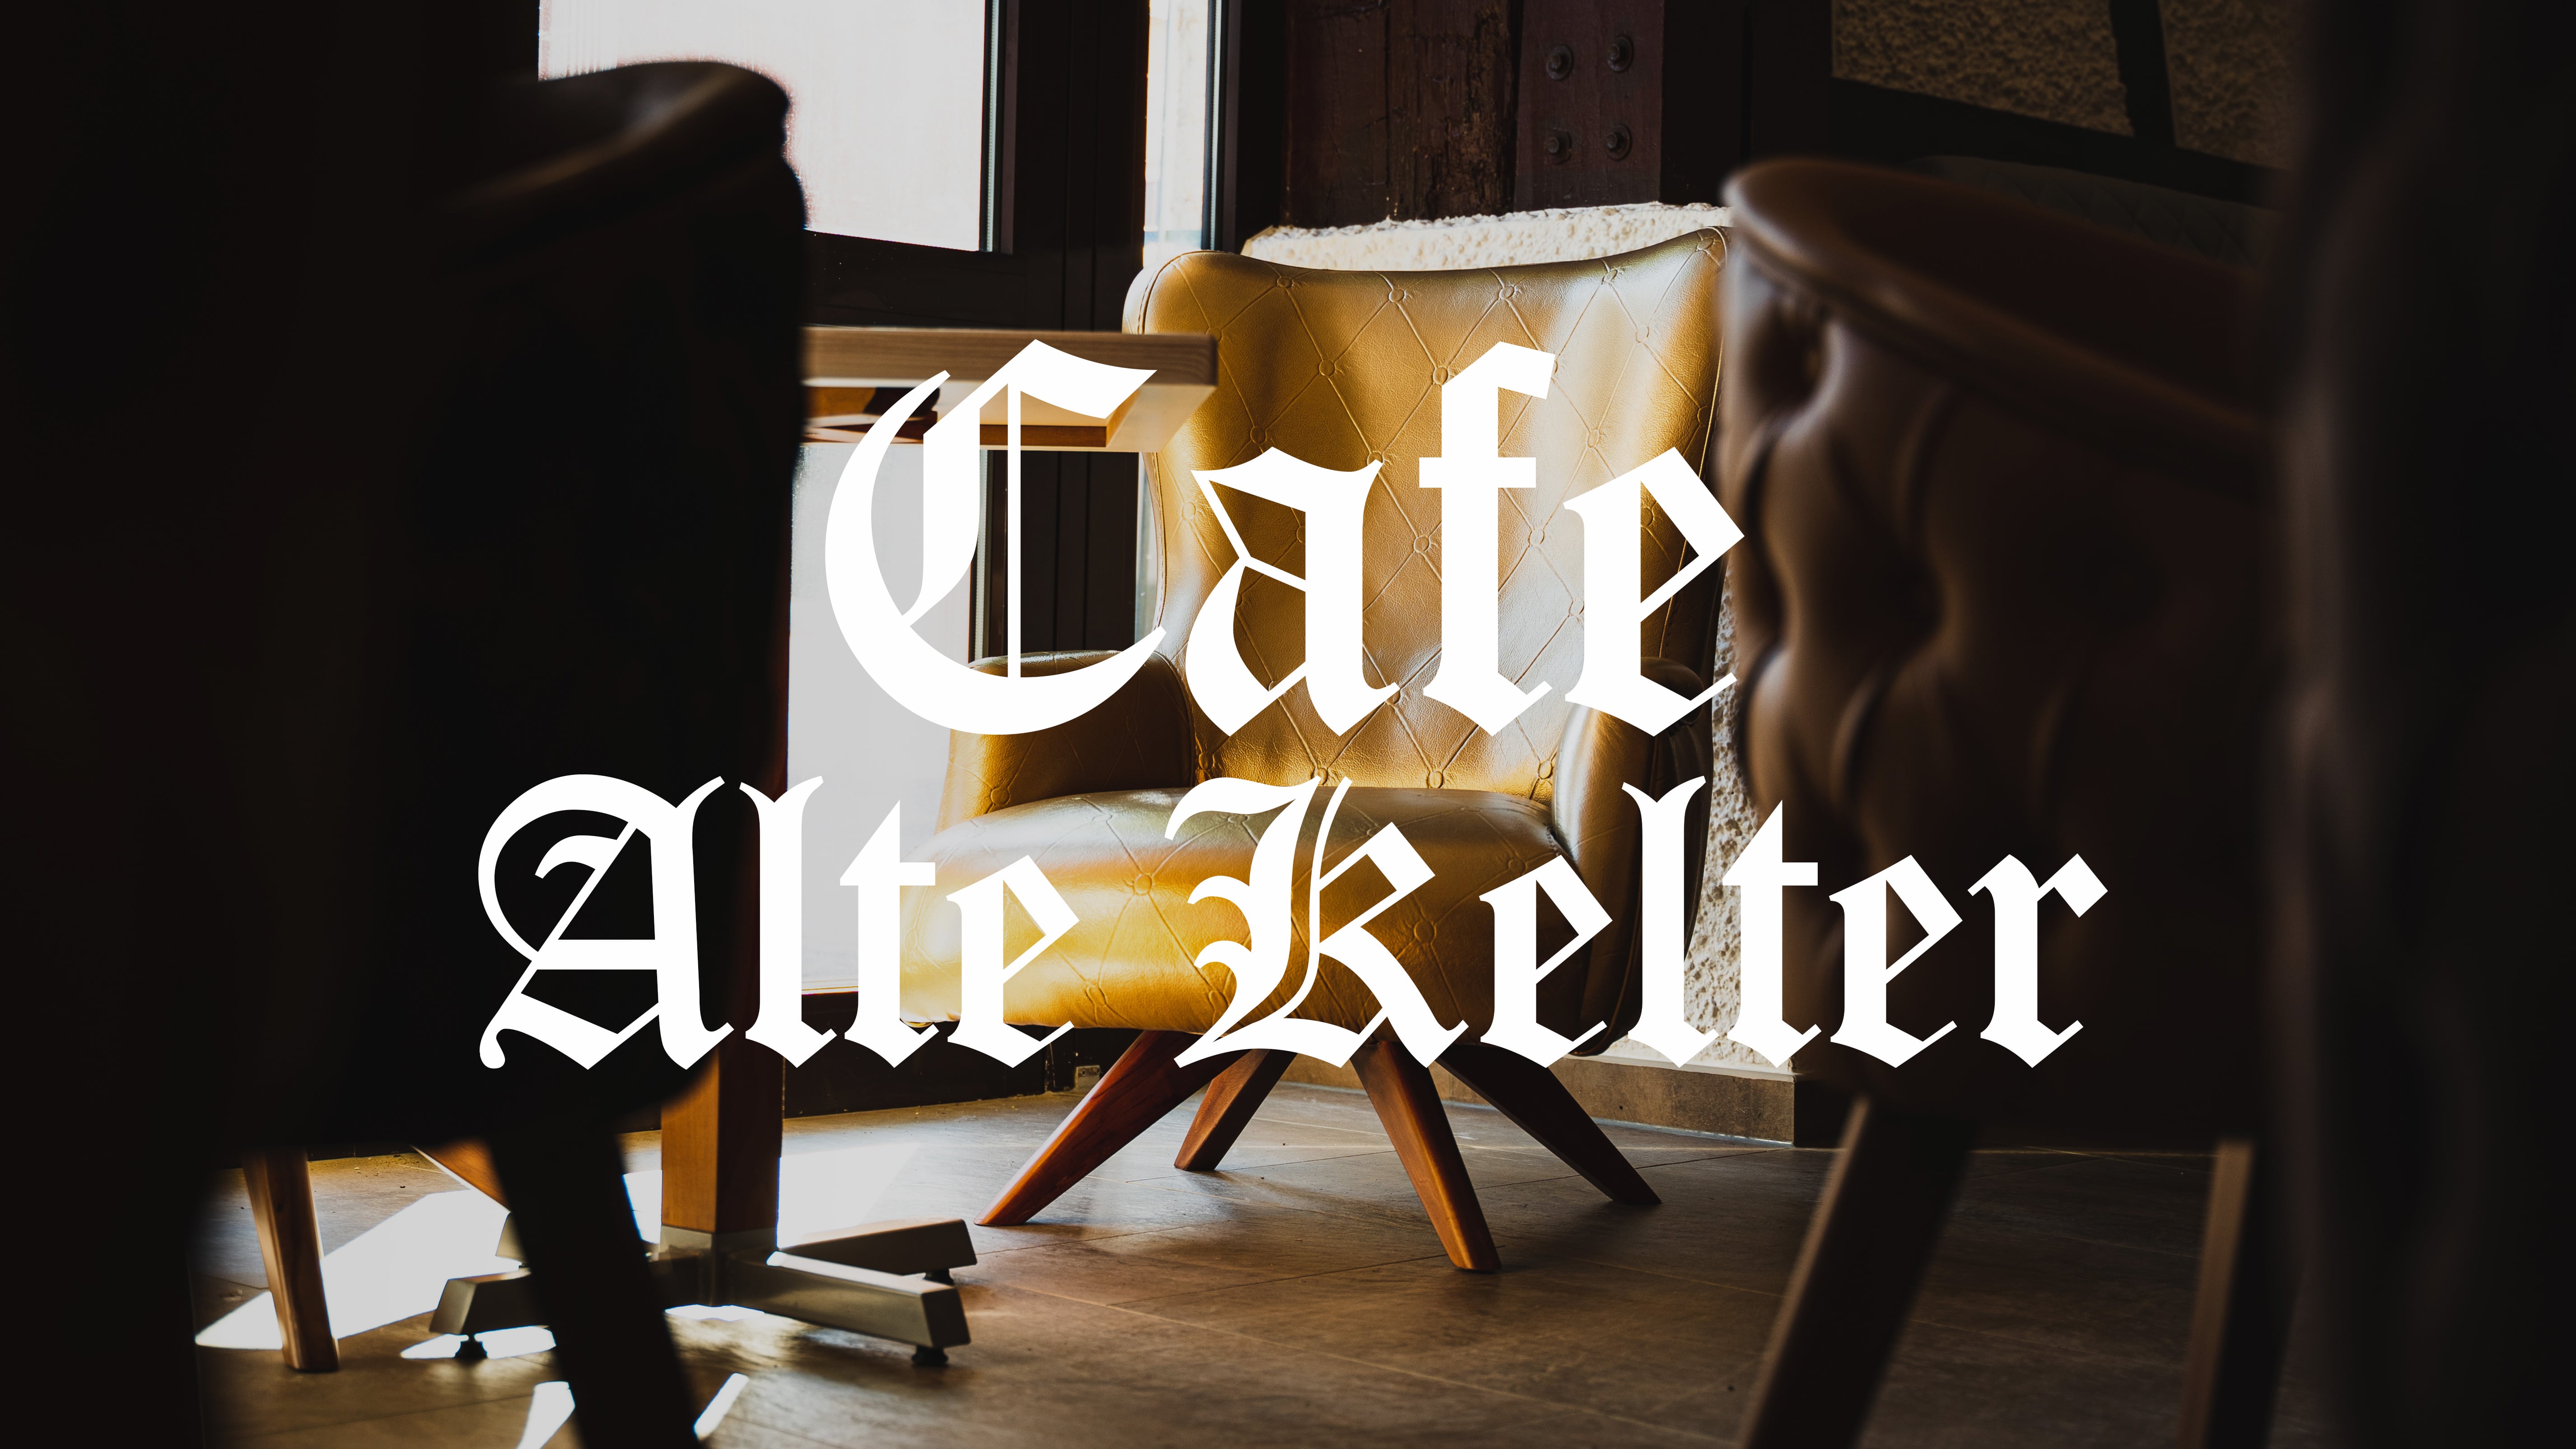 Cafe Alte Kelter Beilstein